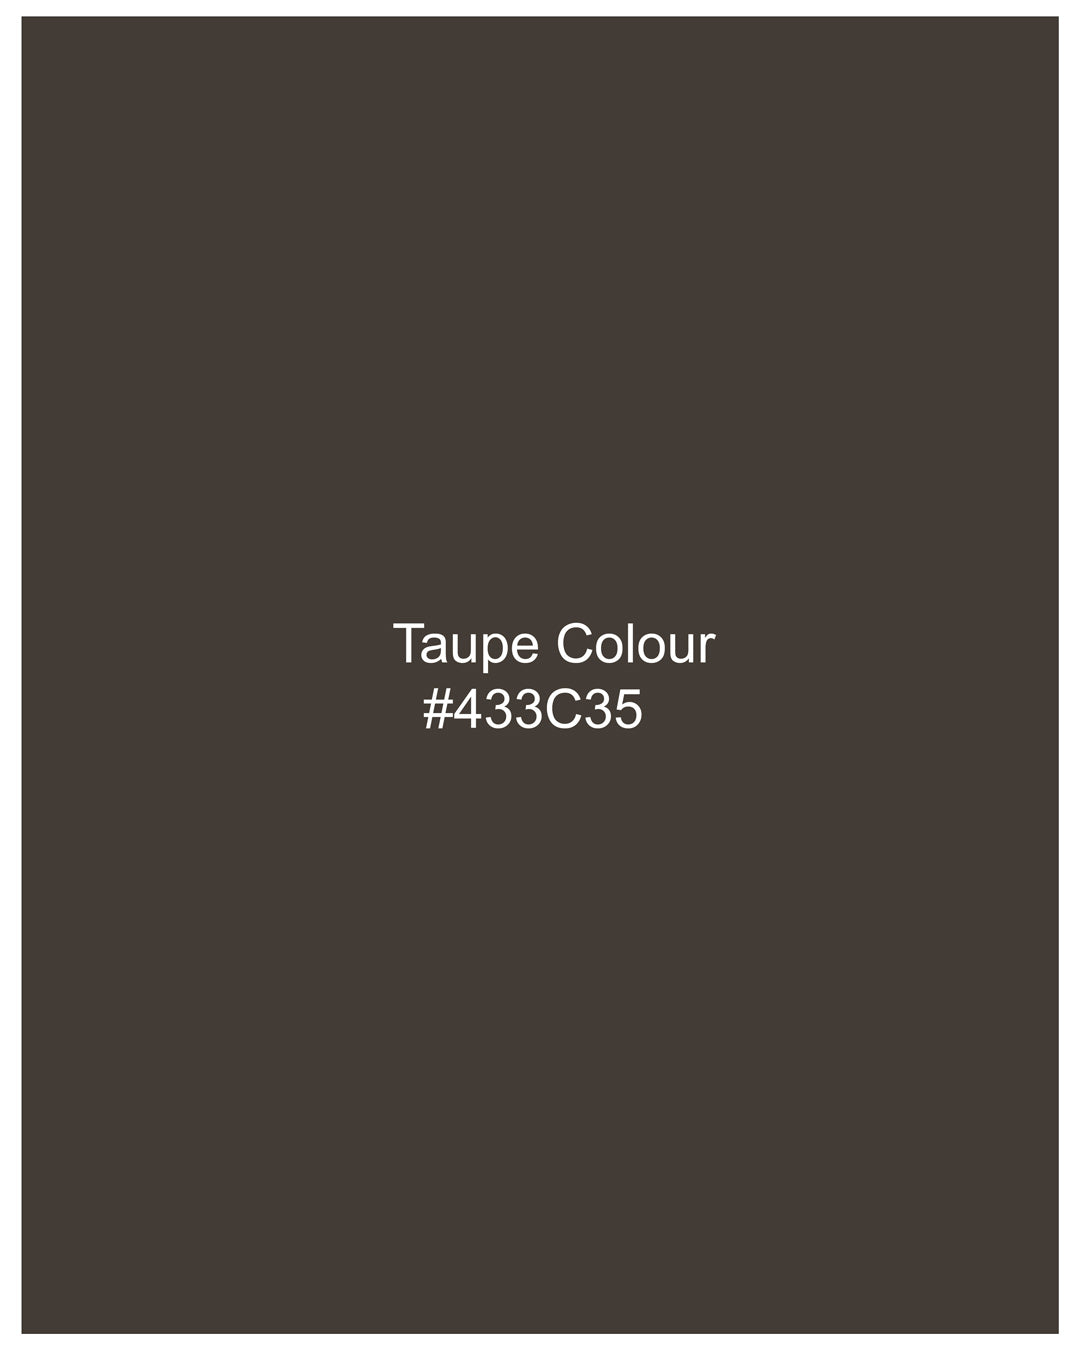 Taupe Coffee Brown Waistcoat V2703-36, V2703-38, V2703-40, V2703-42, V2703-44, V2703-46, V2703-48, V2703-50, V2703-52, V2703-54, V2703-56, V2703-58, V2703-60